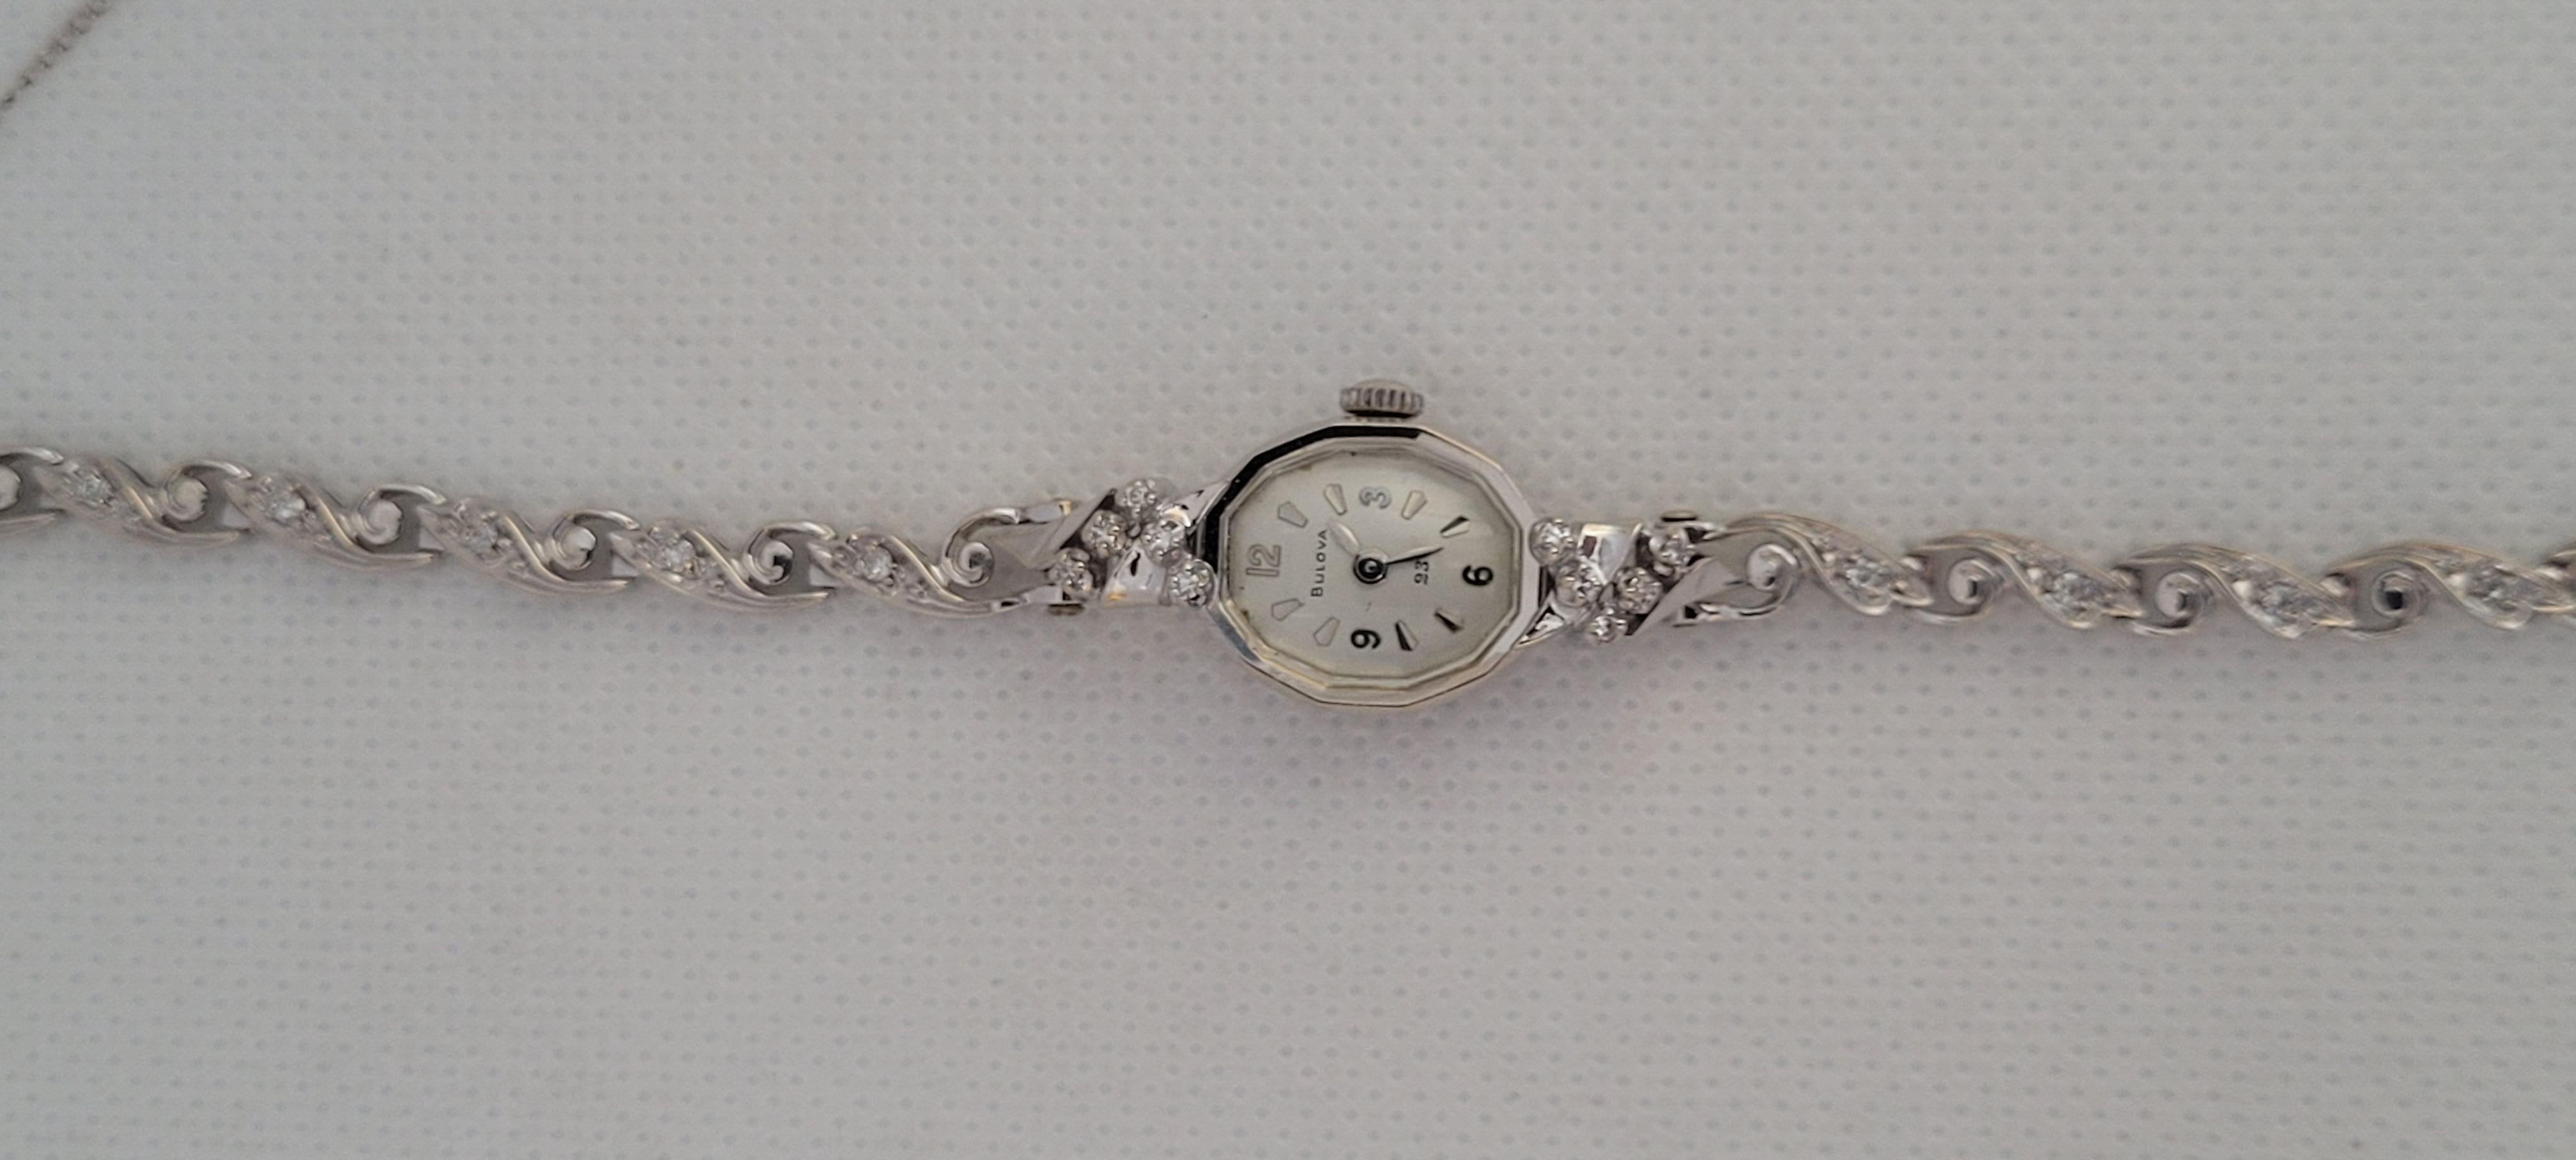 14kt White Gold Bulova Diamond Watch Ladies Serviced Working Warranty 7 Inches Zu verkaufen ist eine atemberaubende Damen Bulova Diamant-Uhr in 14kt Weißgold gefertigt. Diese Art-Deco-Uhr im Vintage-Stil wurde vollständig gewartet und befindet sich